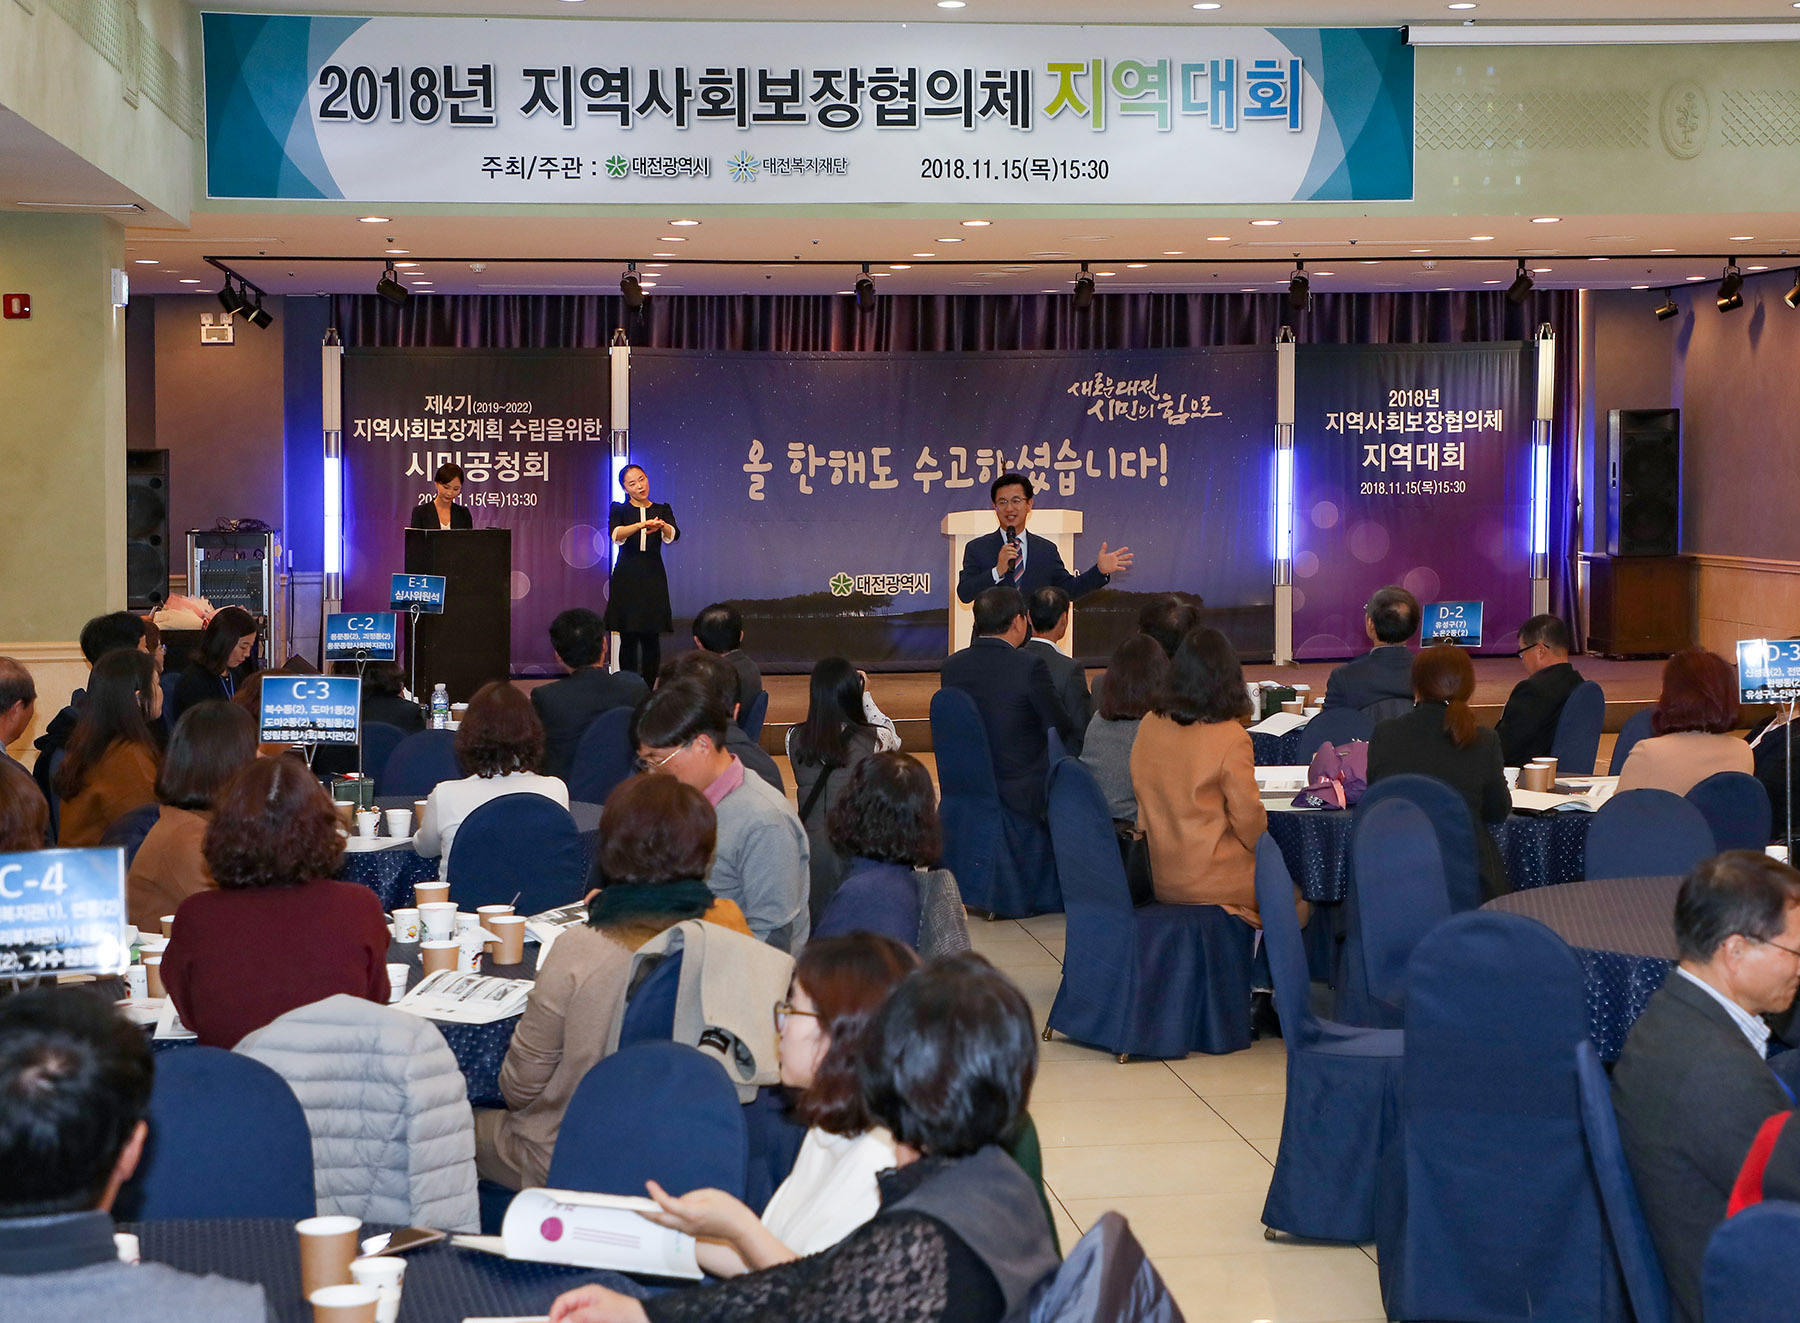 대전시, 2018 지역사회보장협의체 지역대회